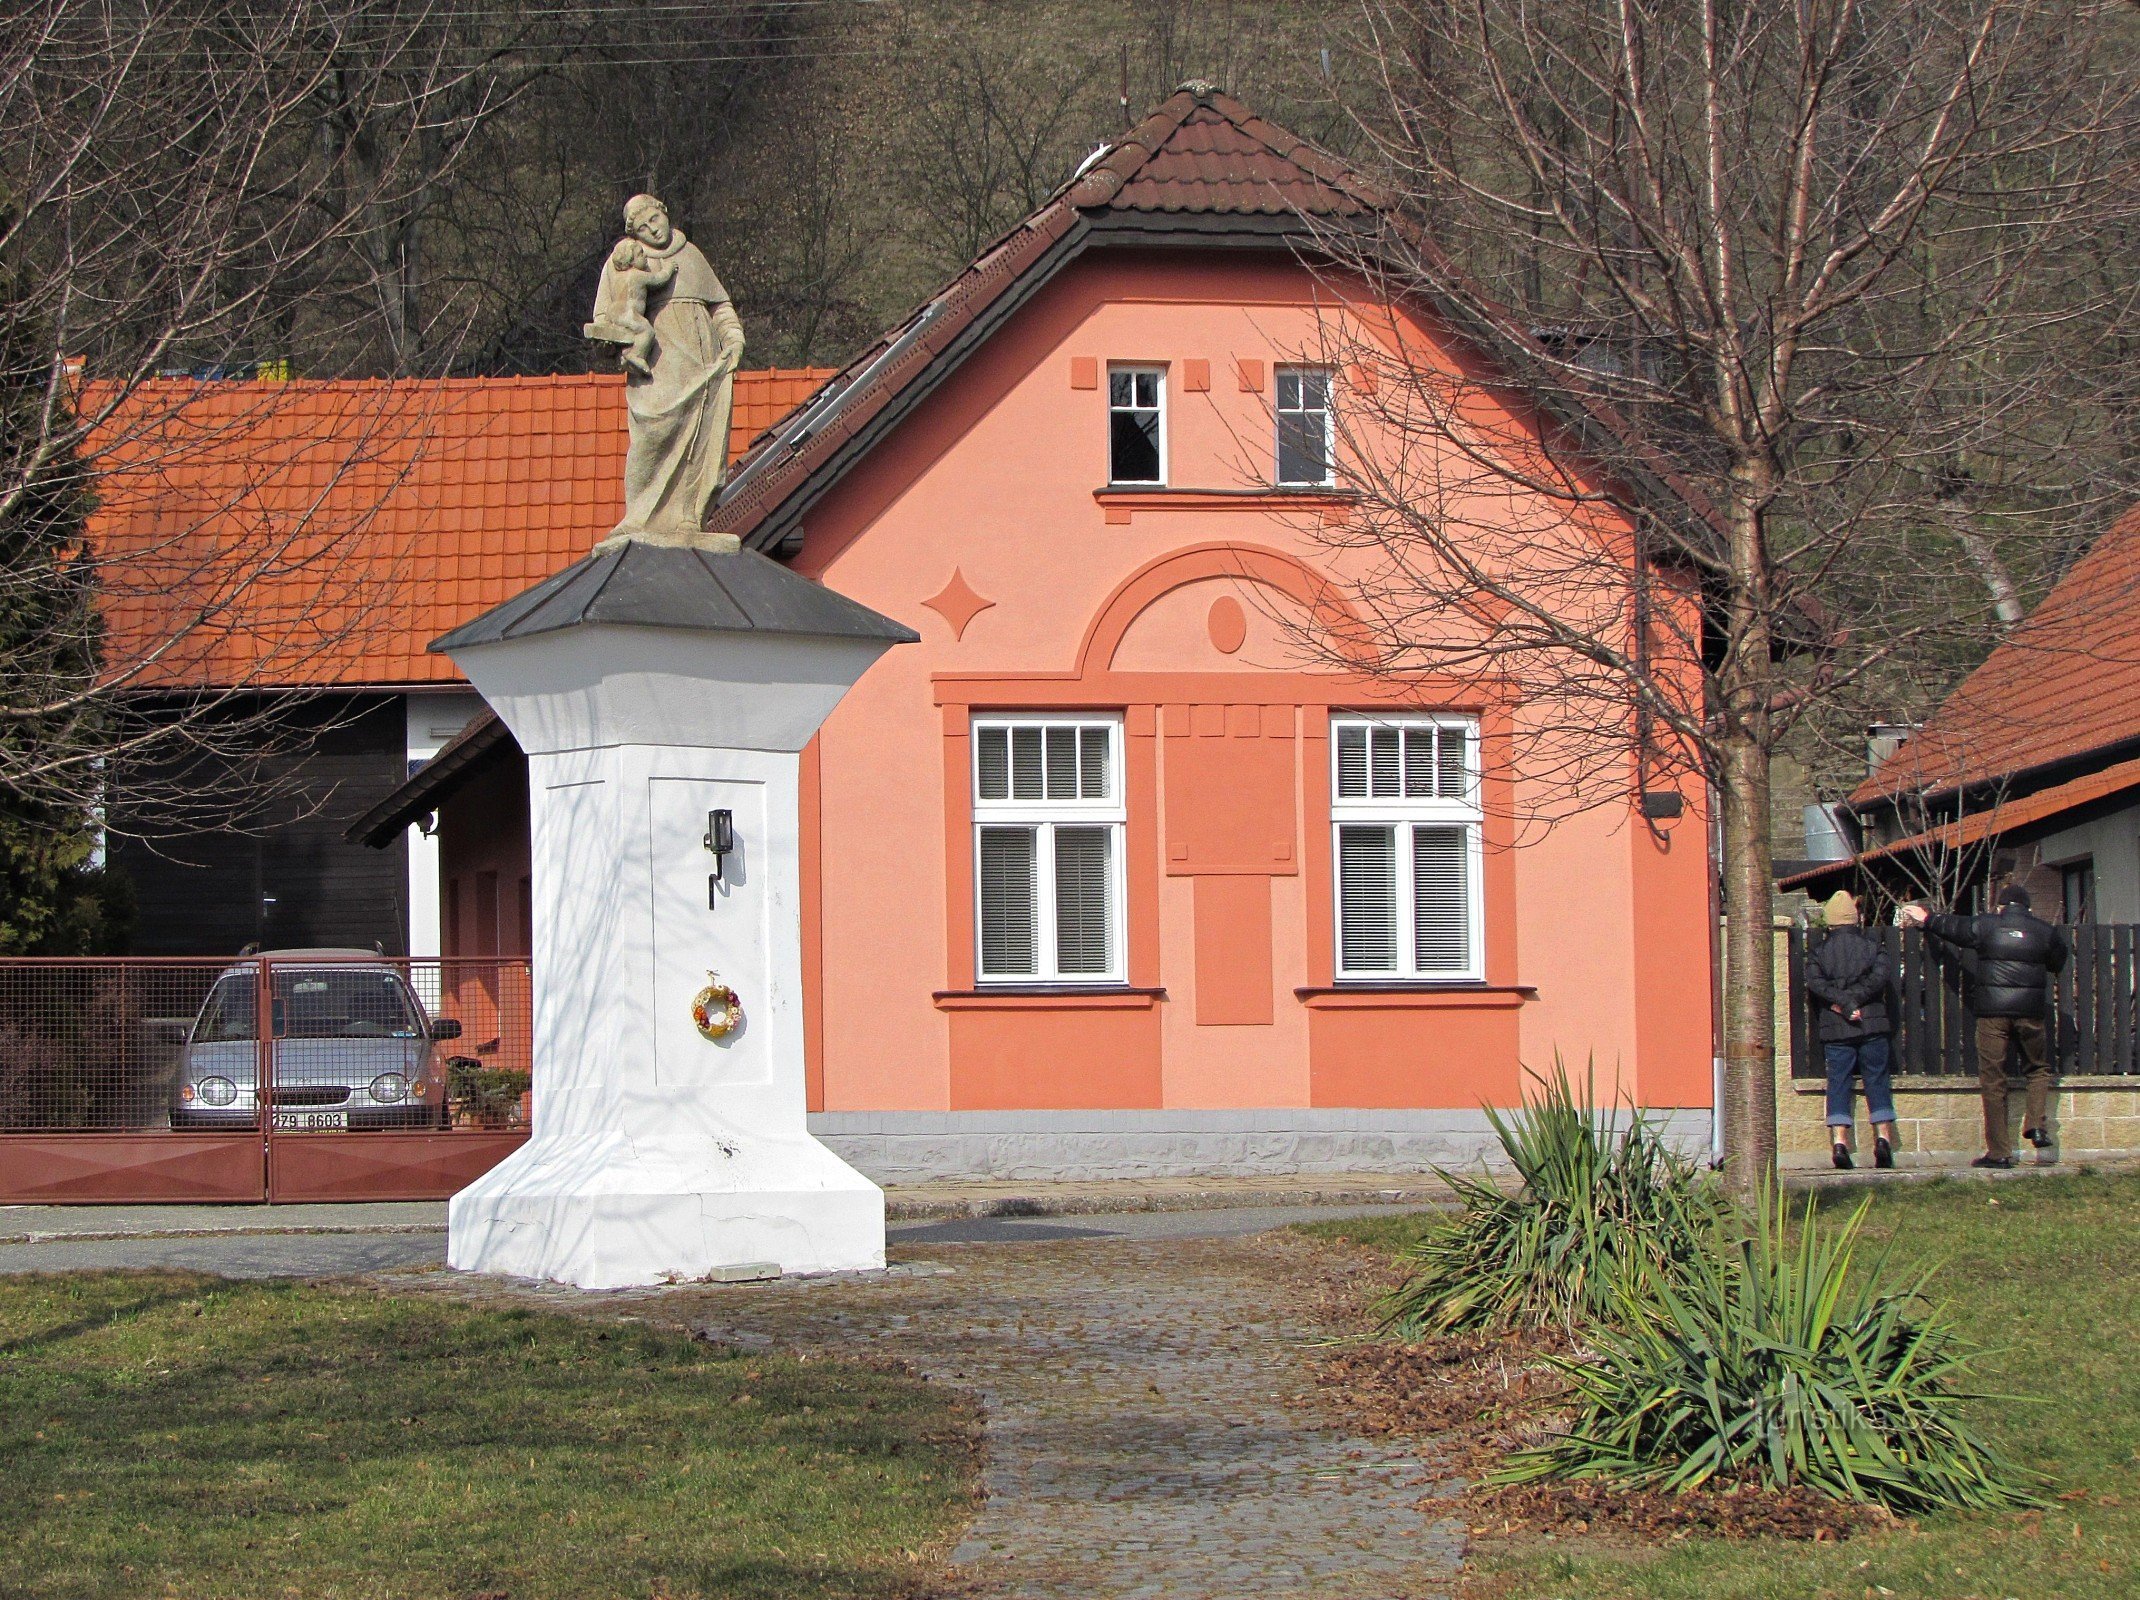 Zlín - statue of St. Anthony